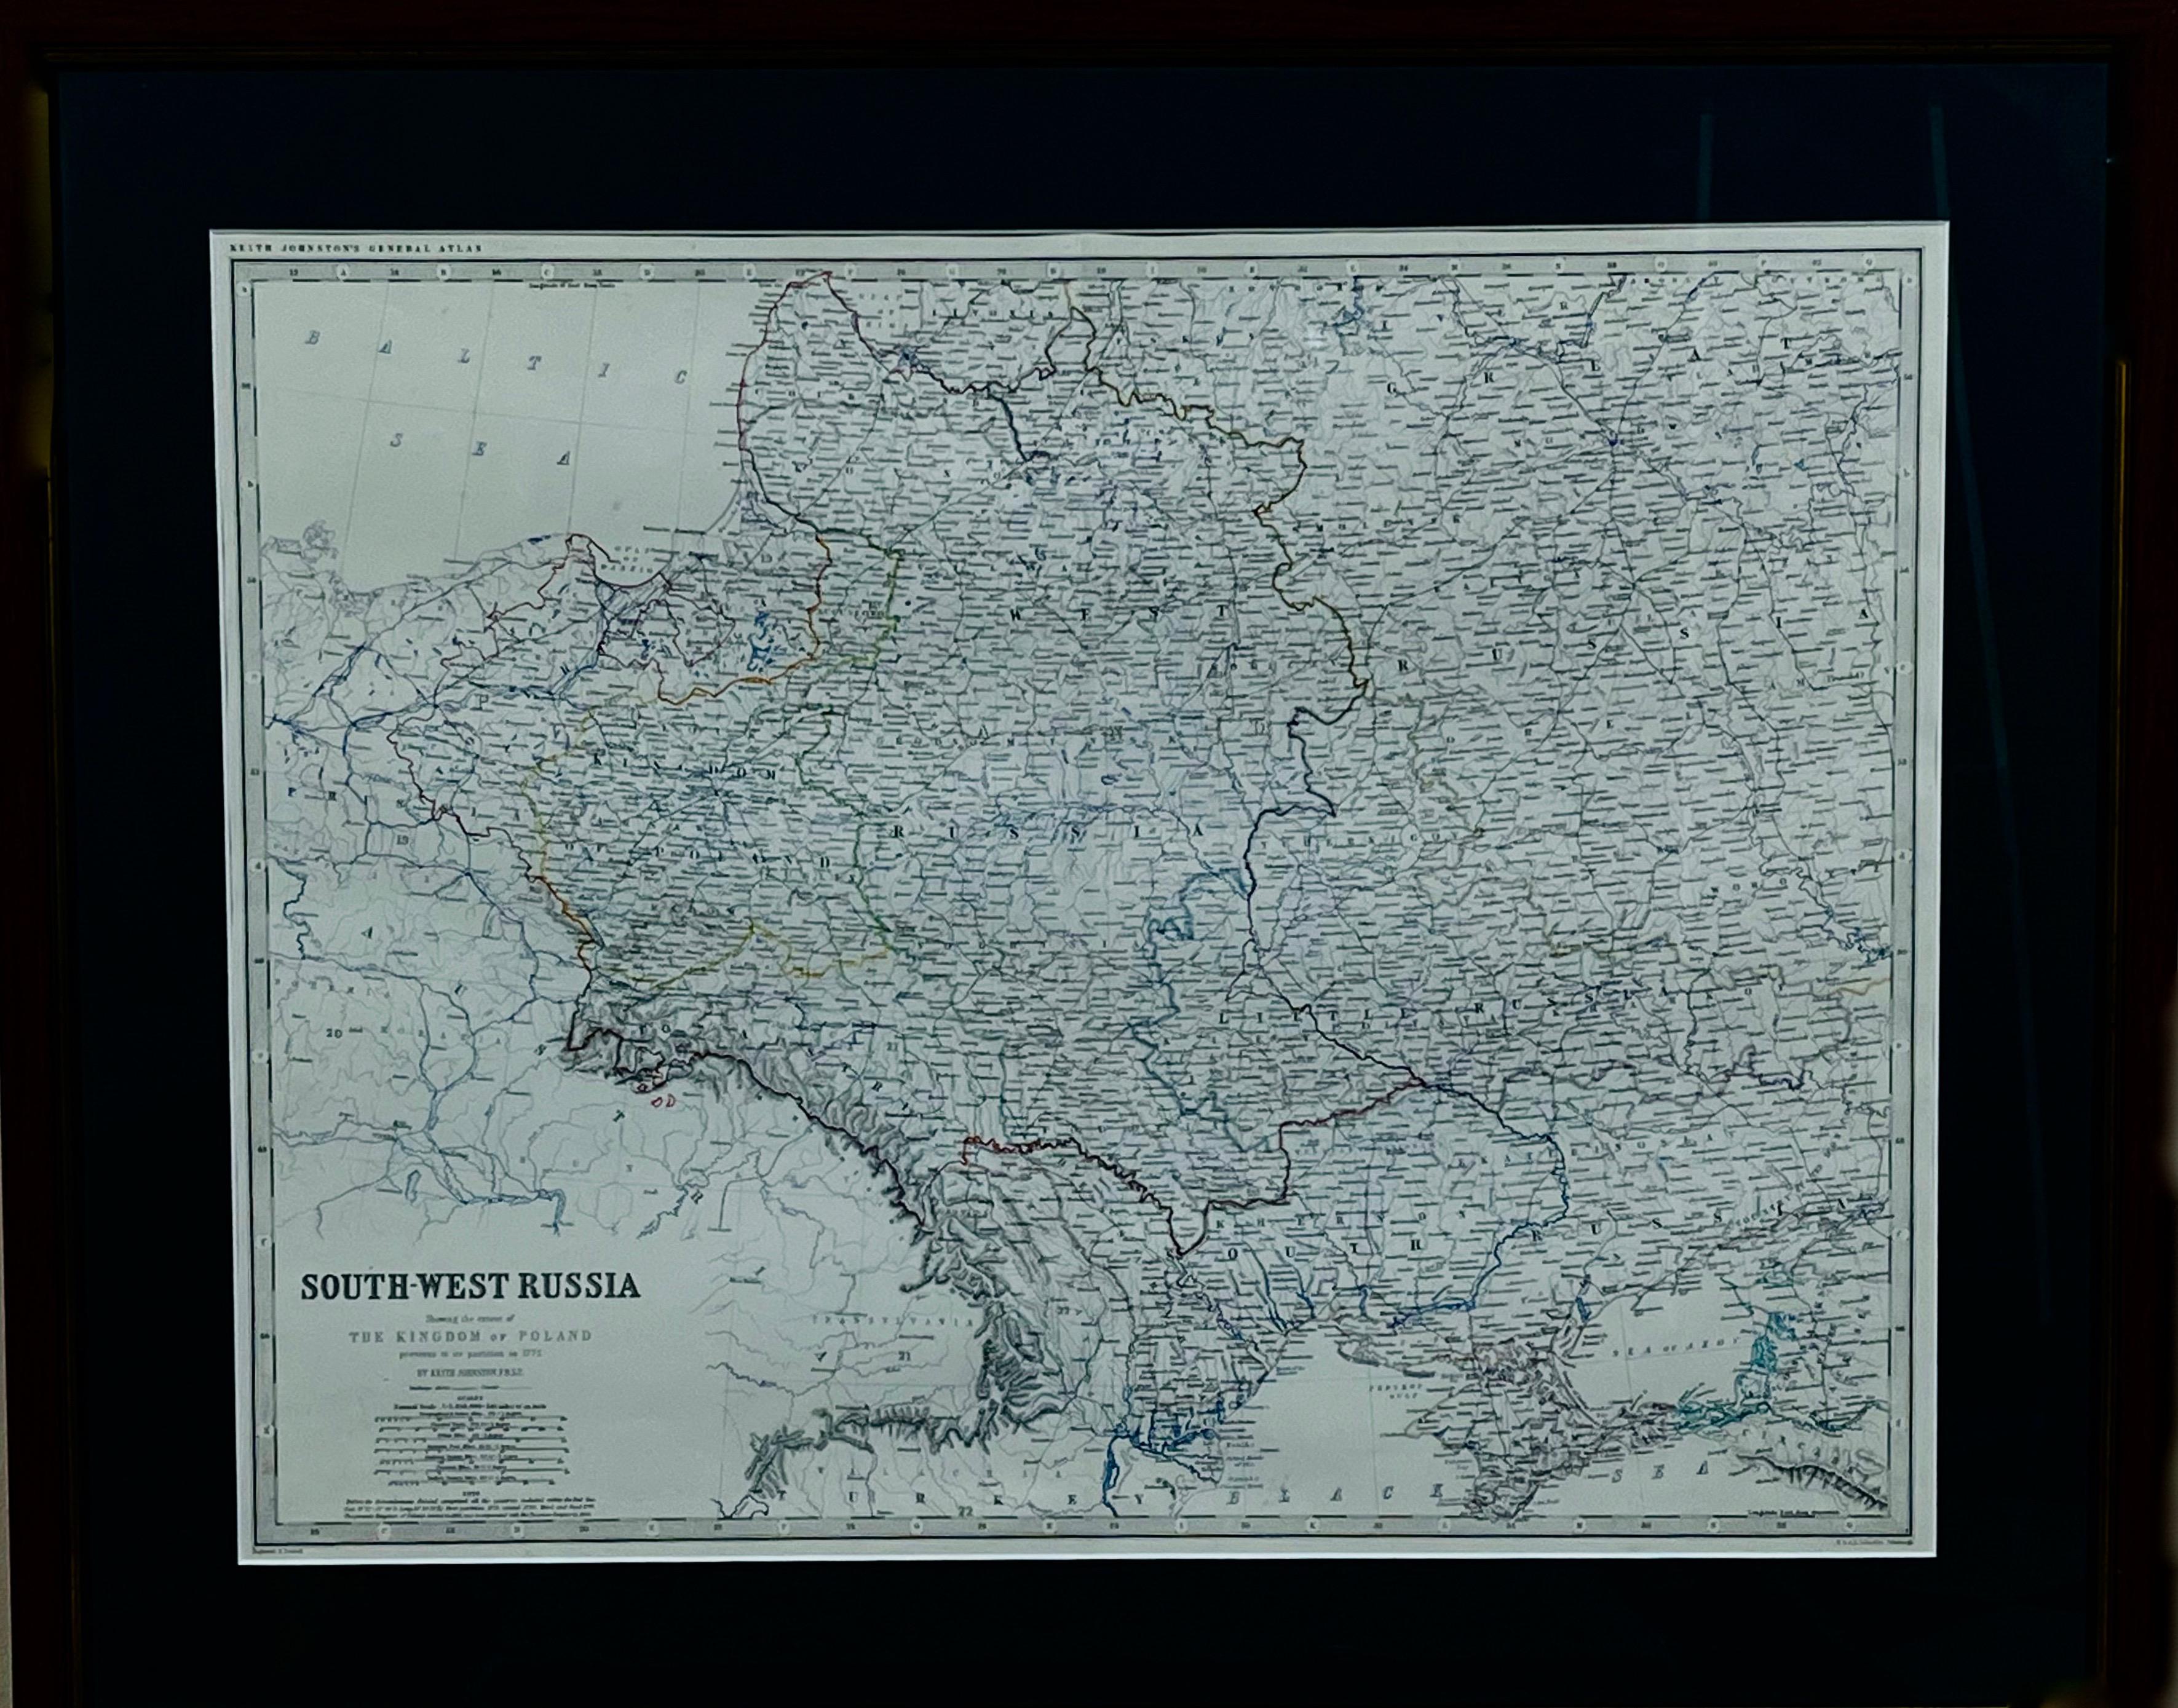 Mapa SOUTH-WEST RUSSIA i KRÓLESTWA POLSKIEGO 